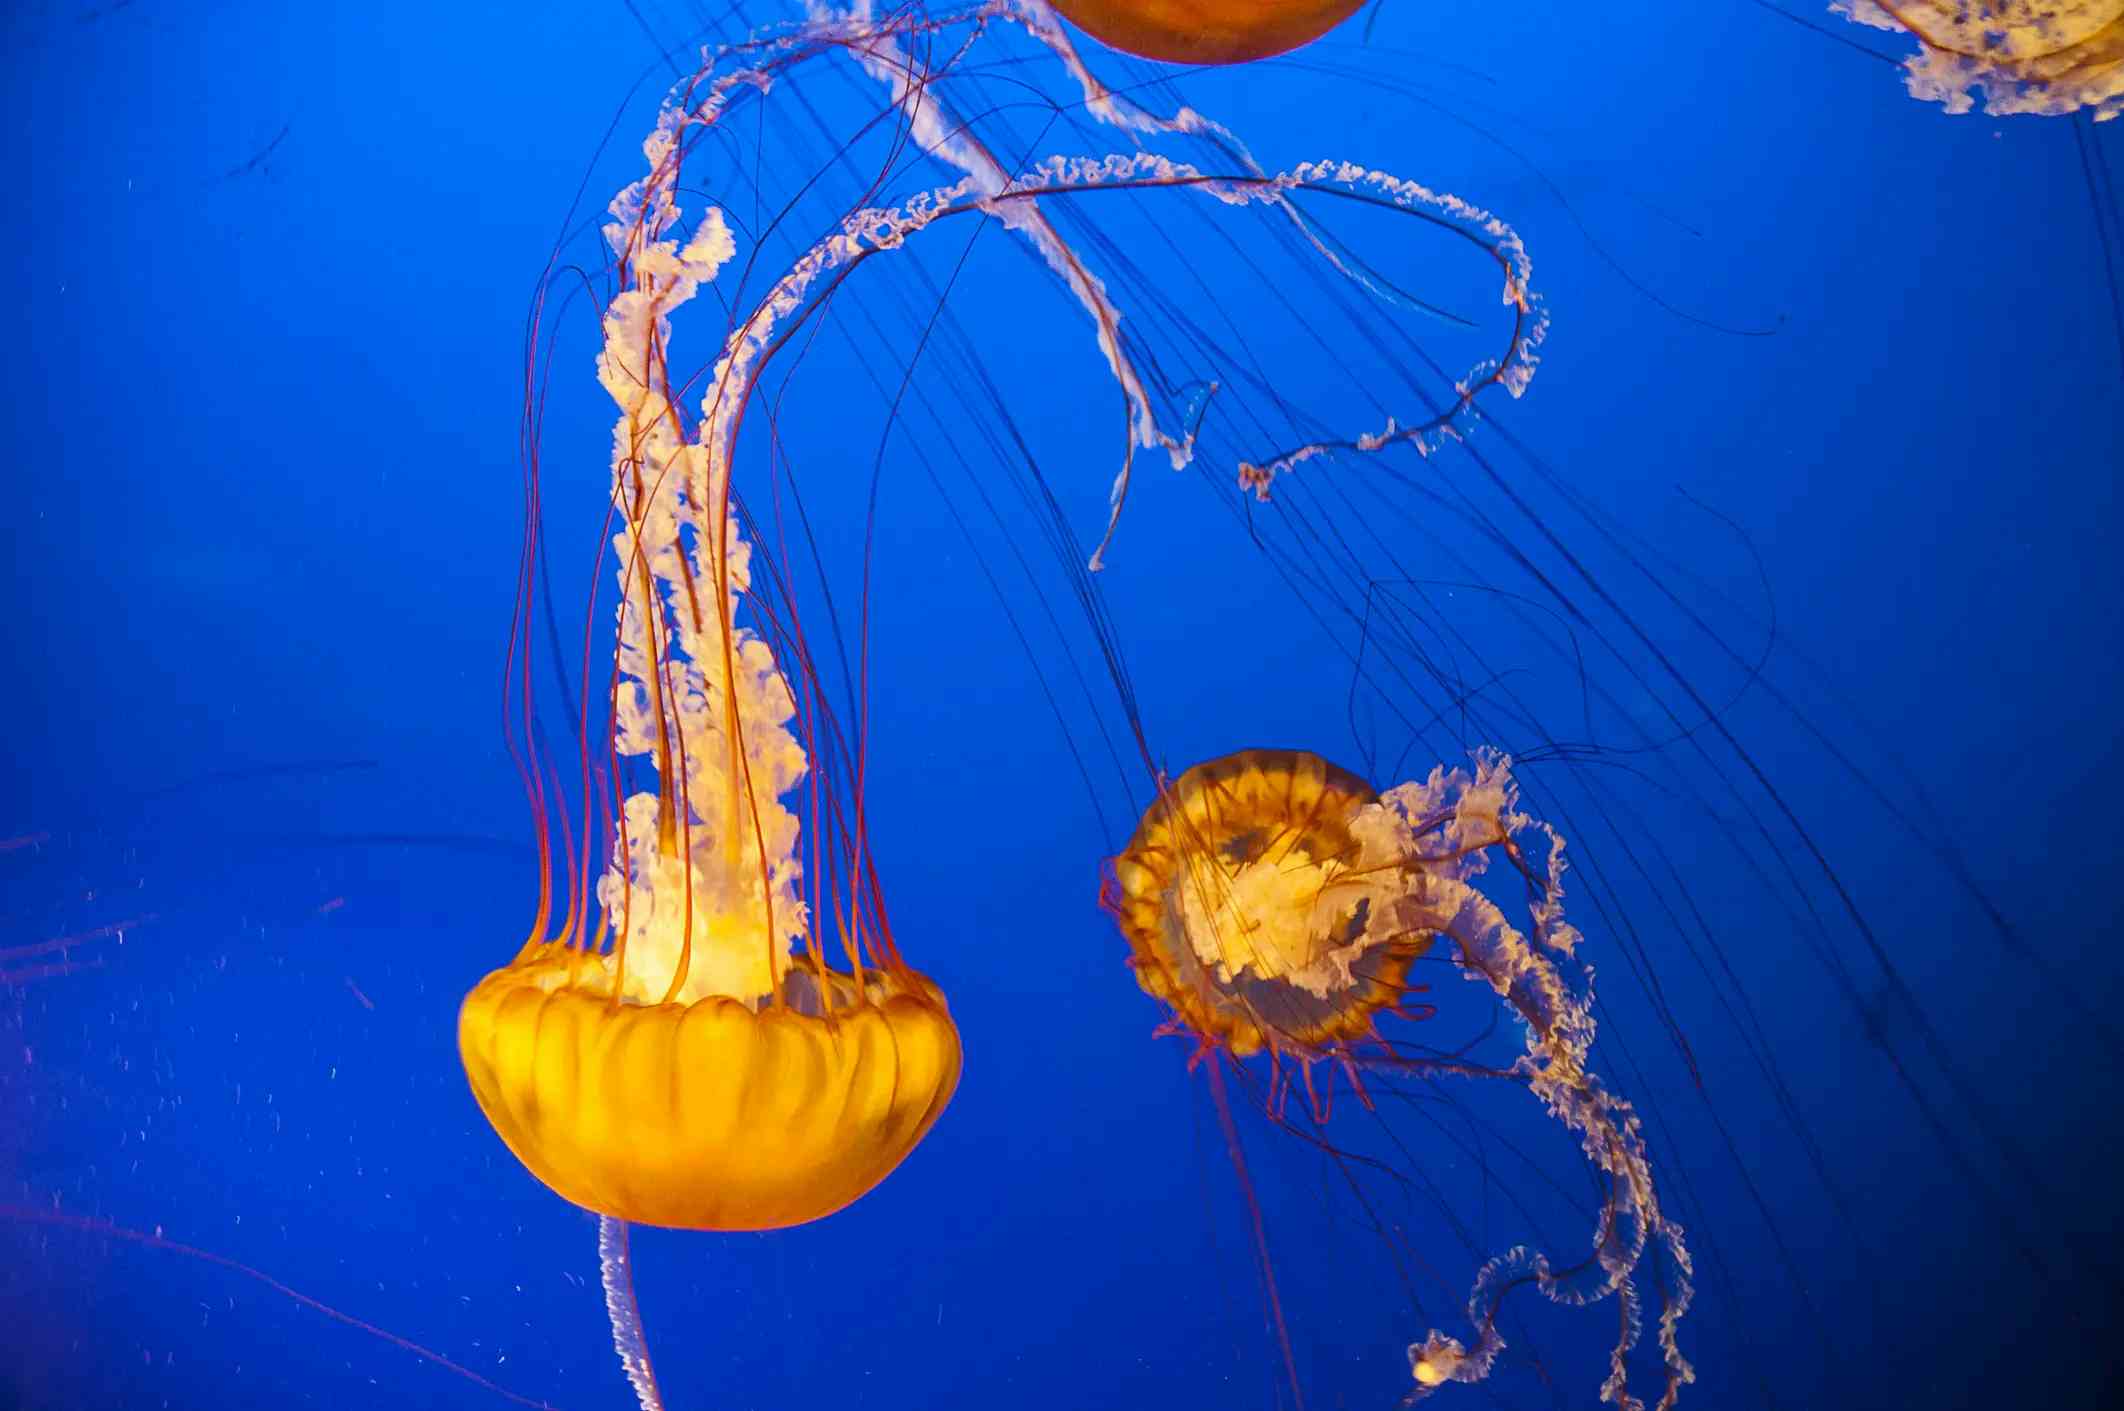 Vancouver Aquarium image